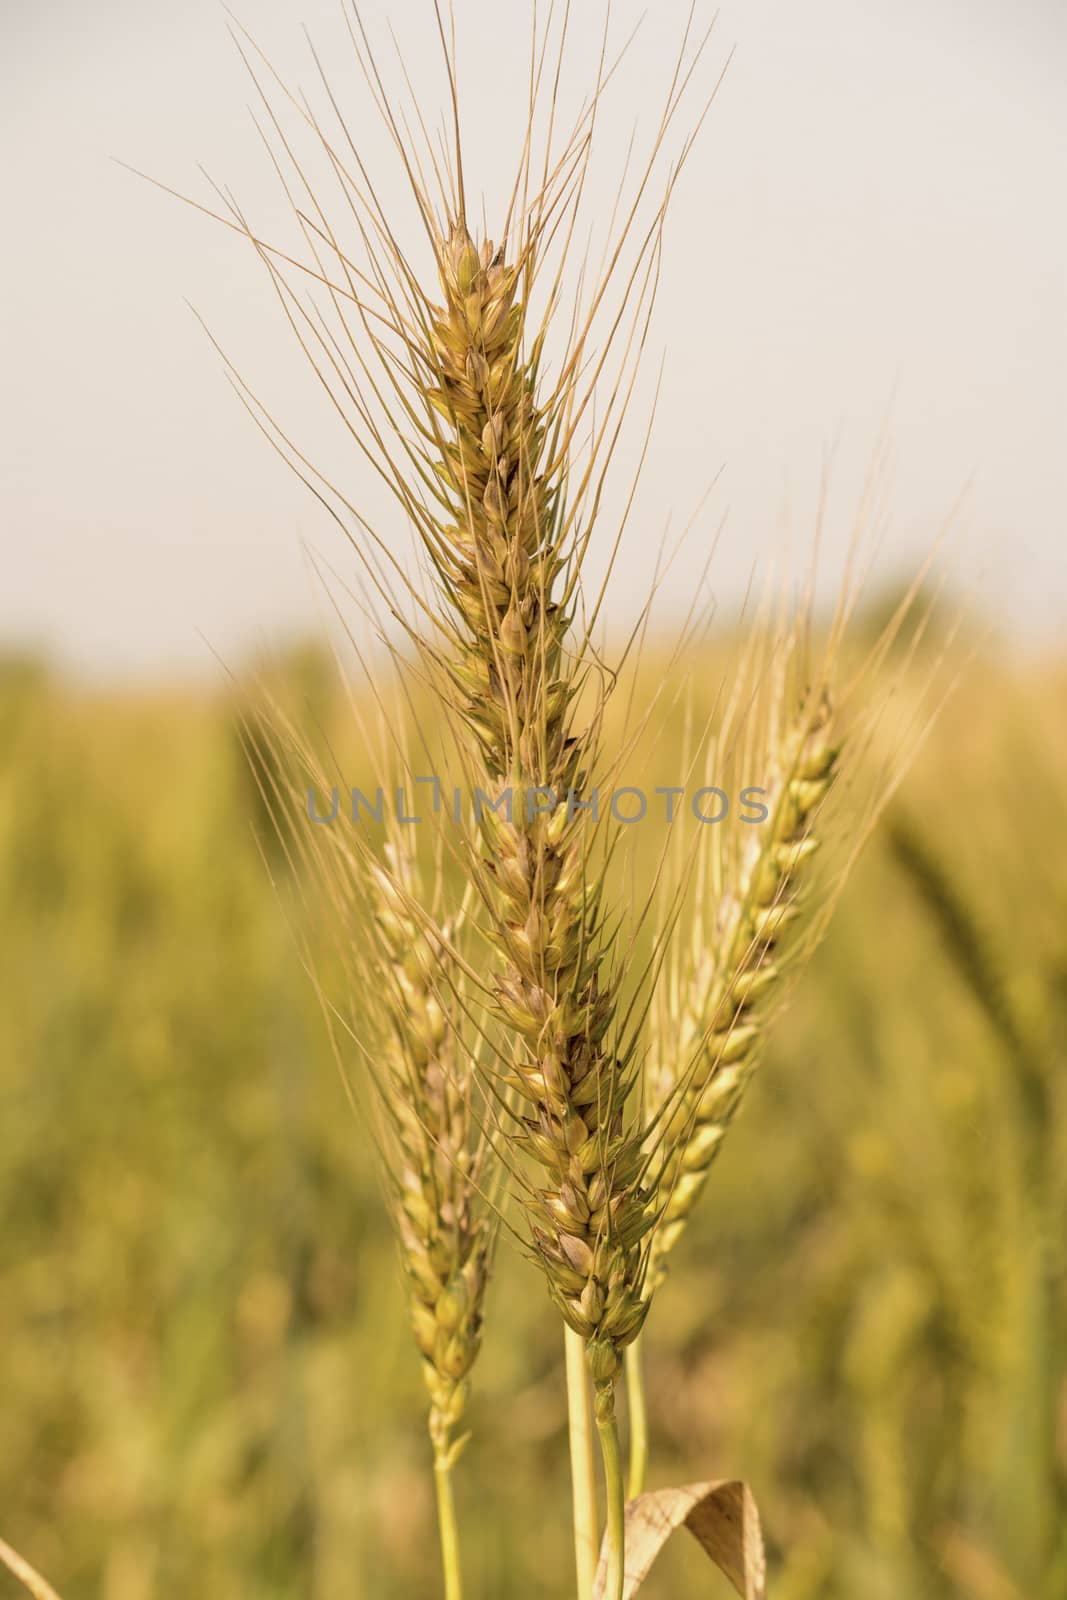 Green wheat field by shaadjutt36